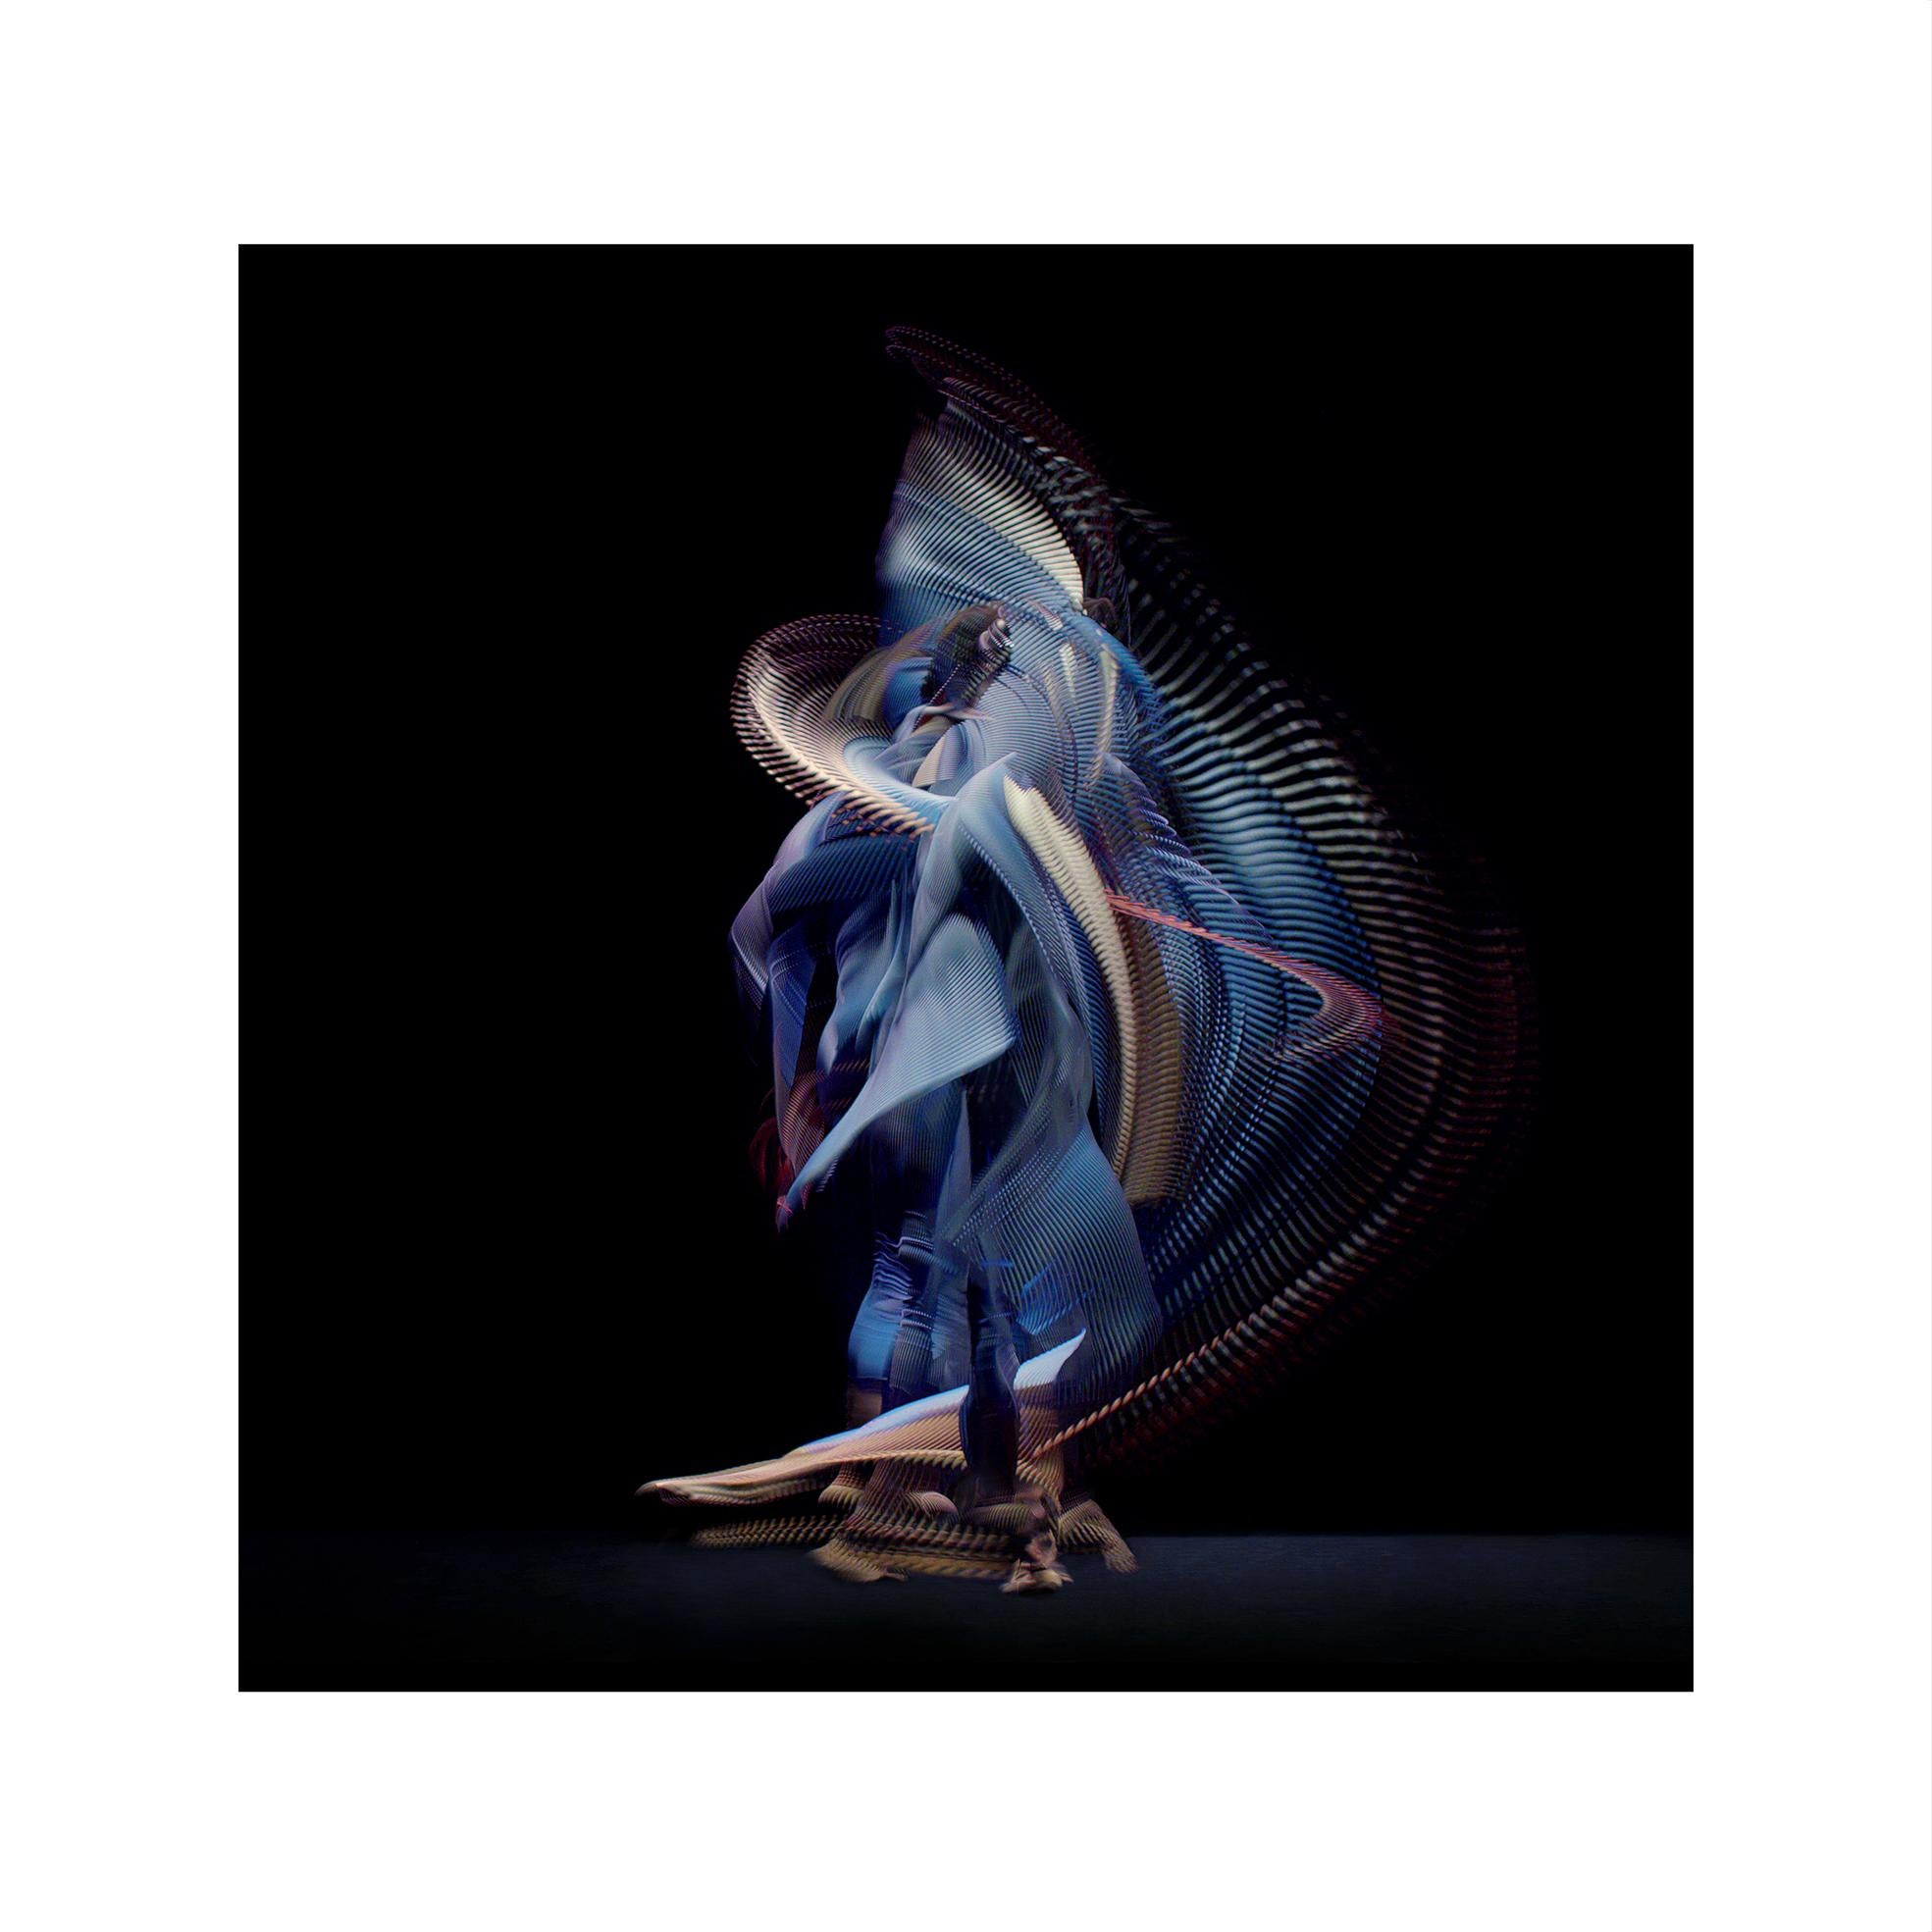 Danseurs abstraits, Bleu foncé 1, 2019 par Giles Revell - Photographie, Noir, Ballet